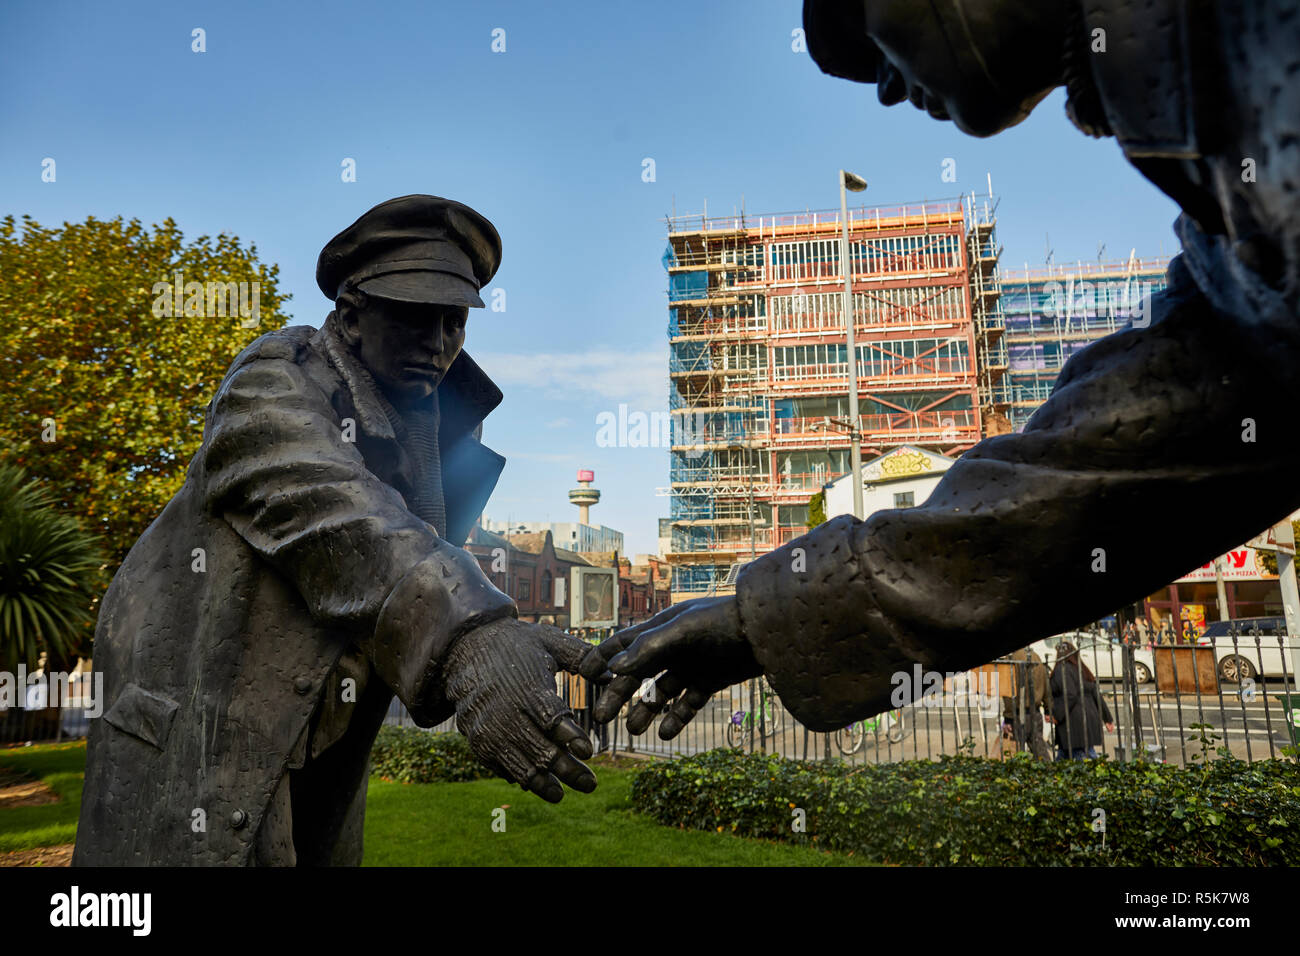 Das Stadtzentrum von Liverpool jetzt alle zusammen, die Statue, von Andy Edwards fiberglas Skulptur zum Gedenken an den Ersten Weltkrieg 1914 Weihnachten Waffenstillstand konzipiert Stockfoto